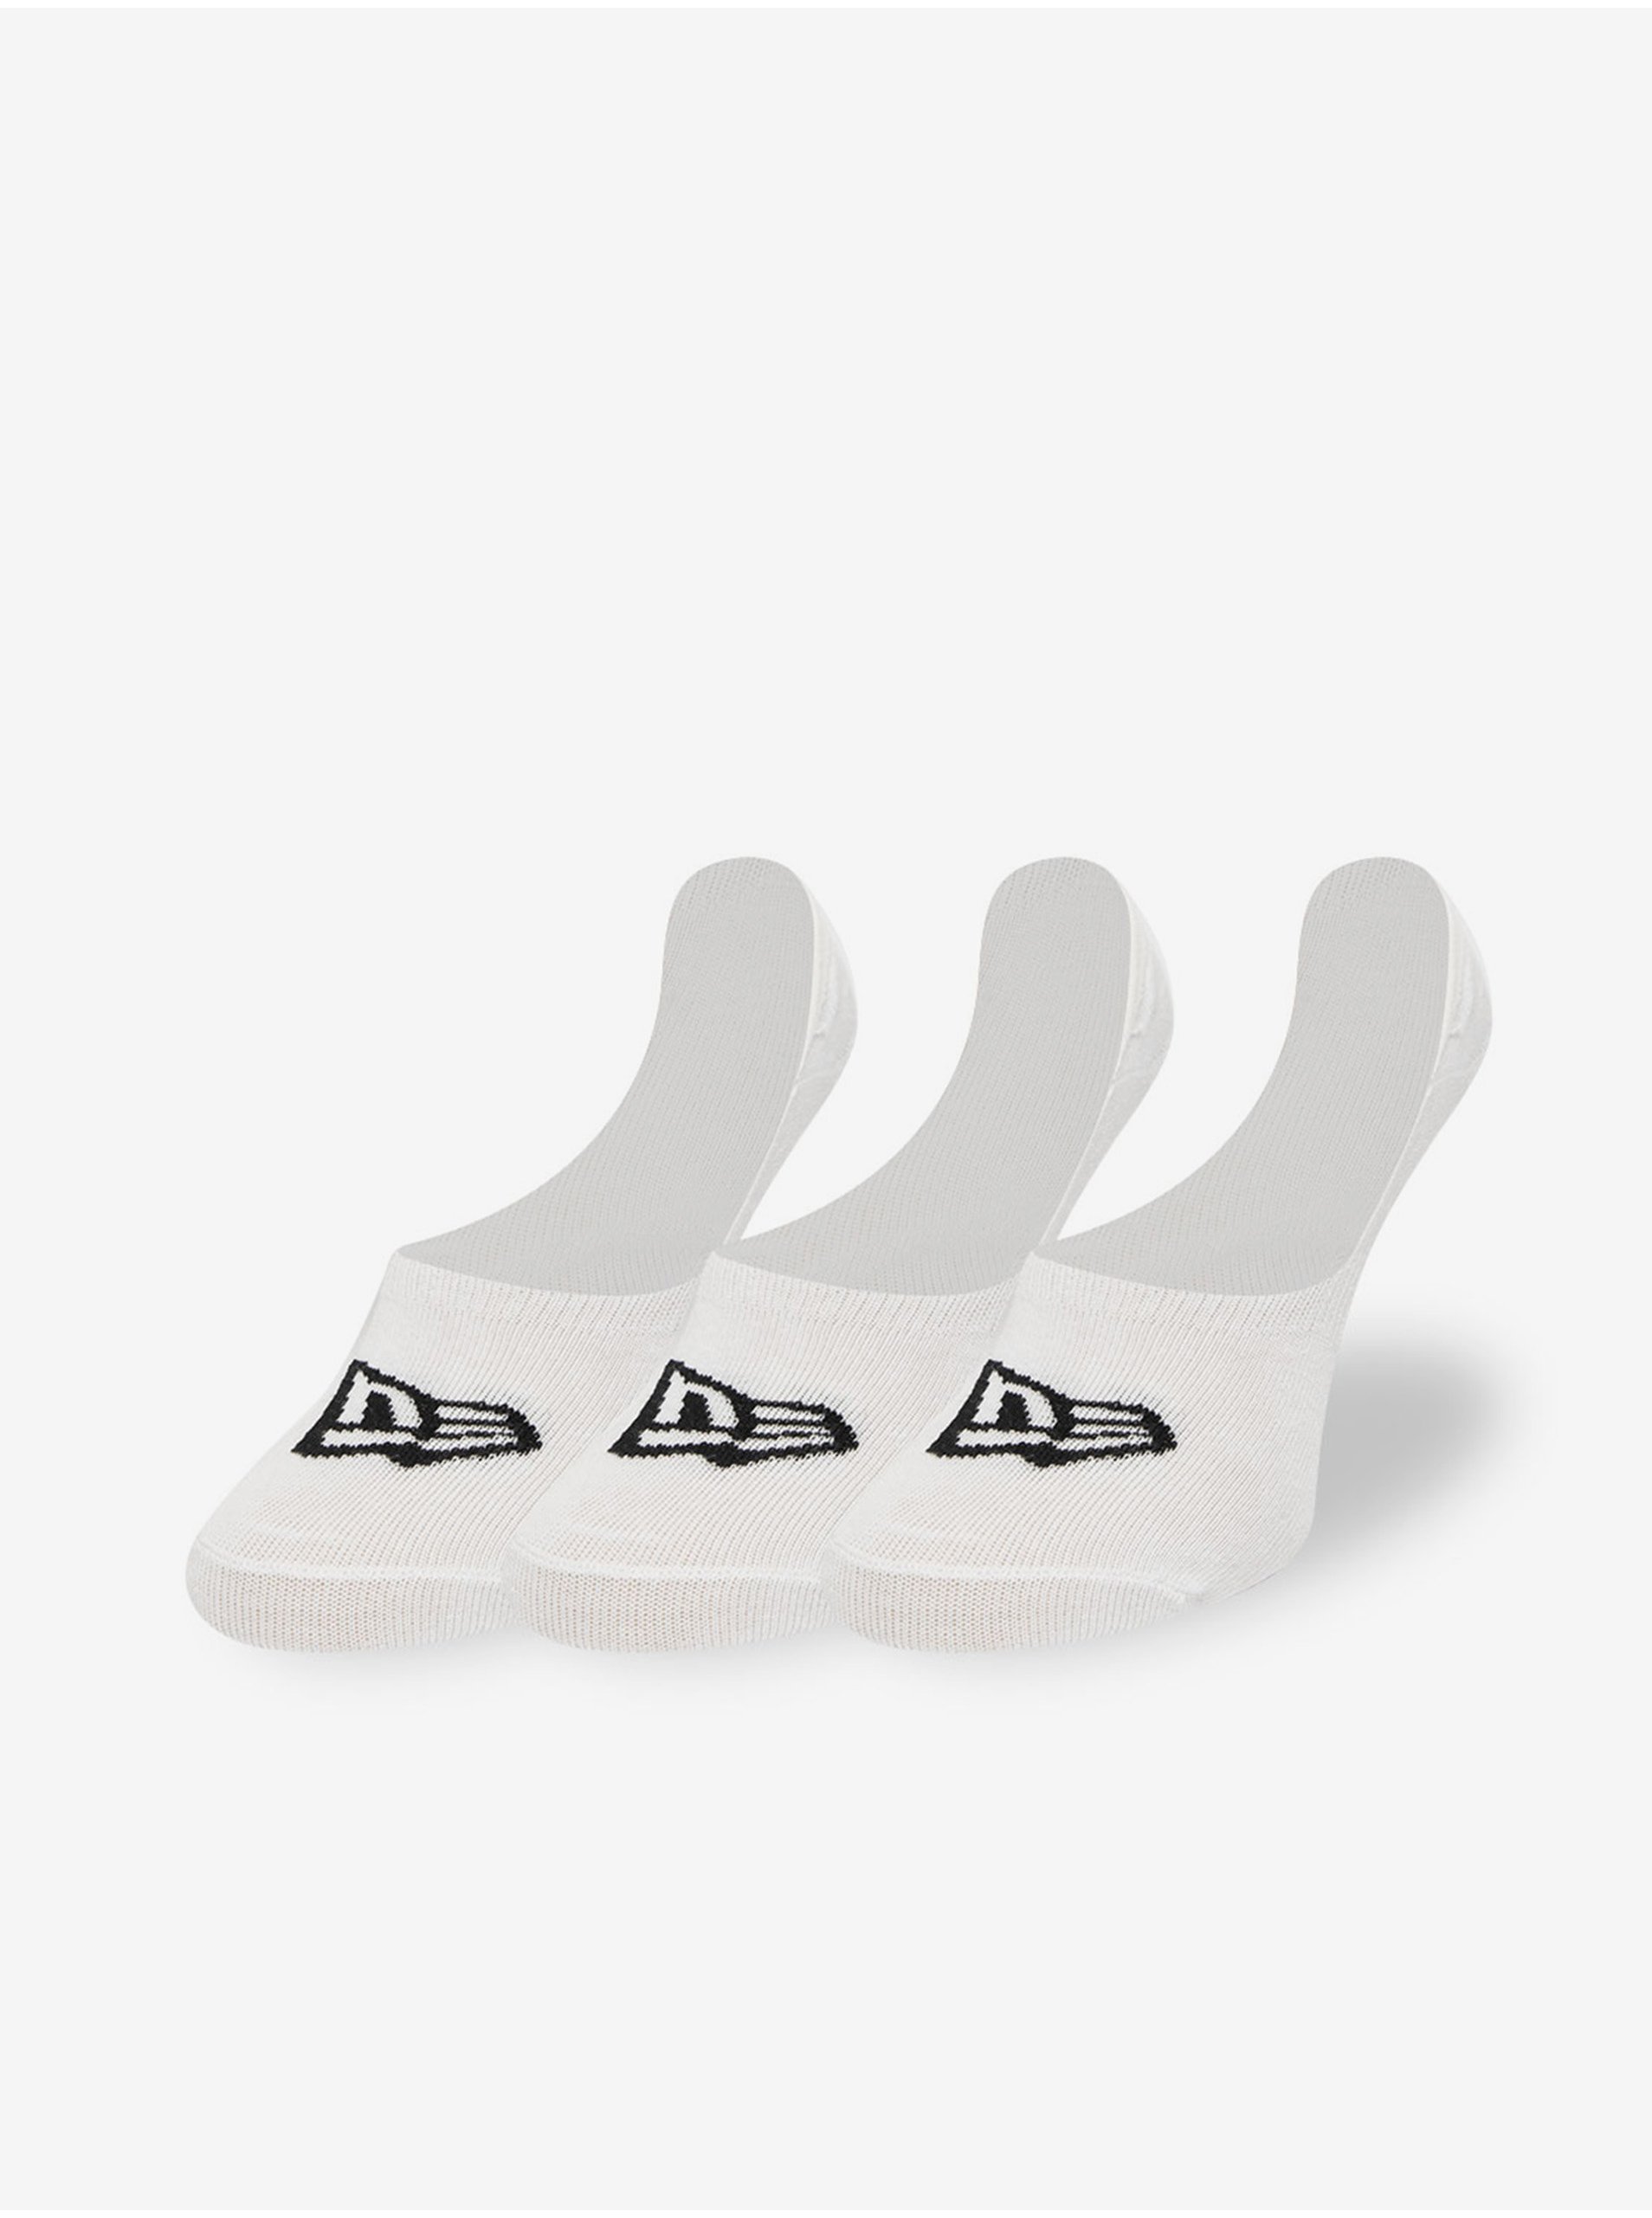 Set of three pairs of socks in white New Era - Men